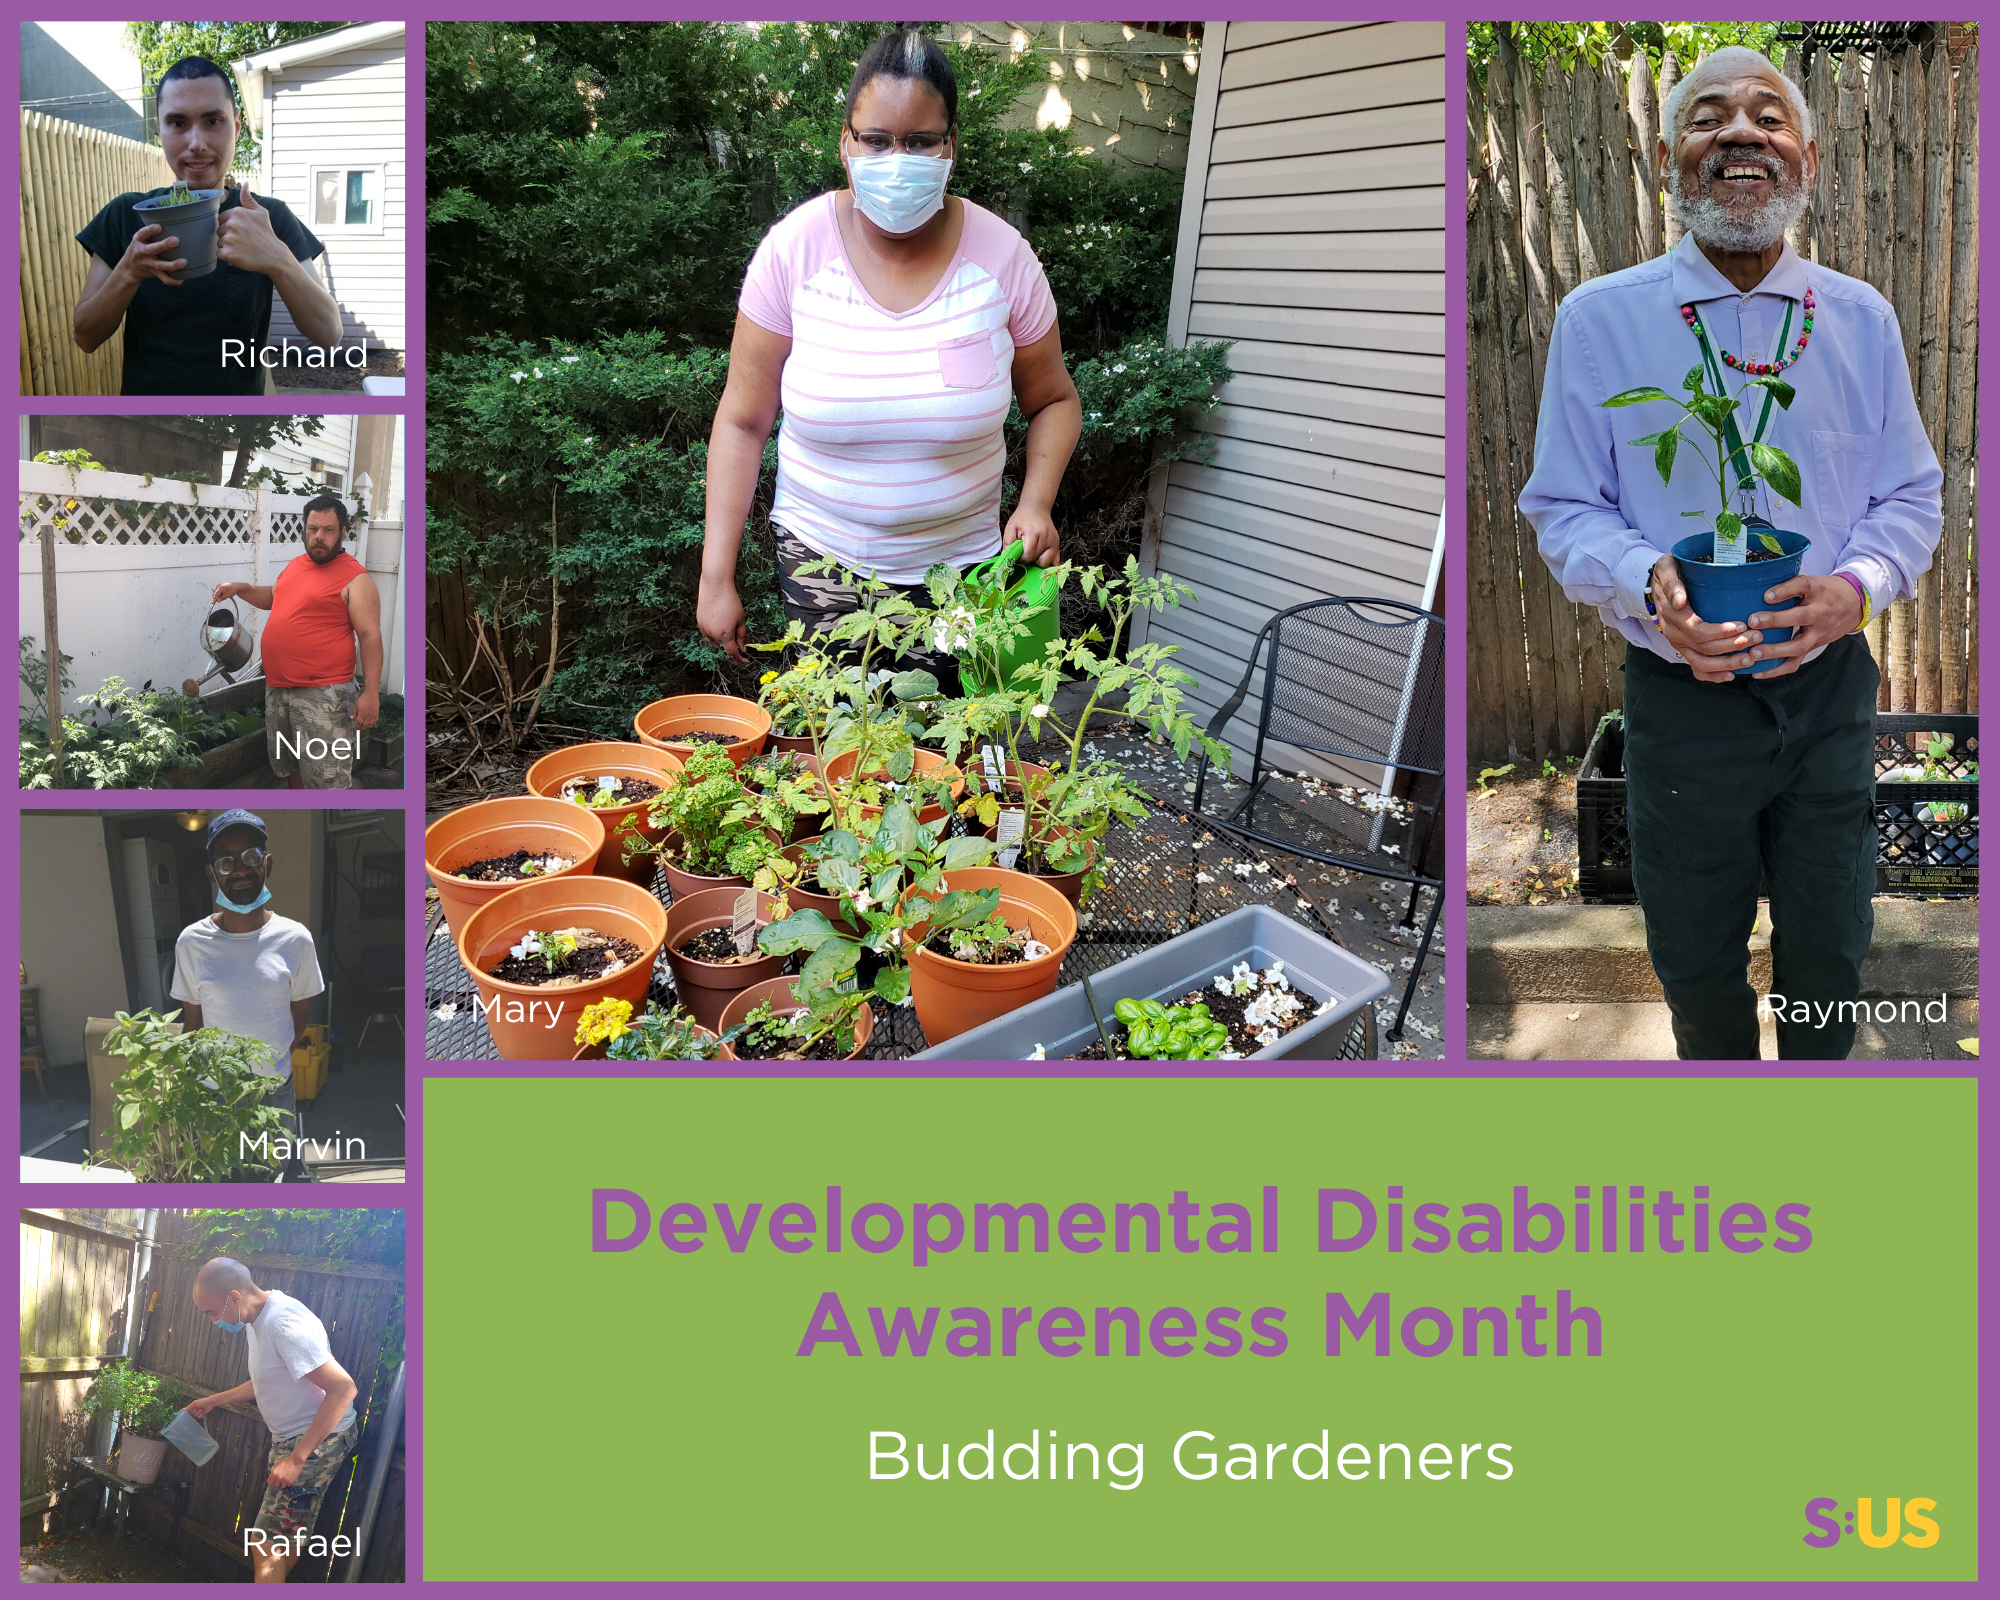 Budding Gardeners